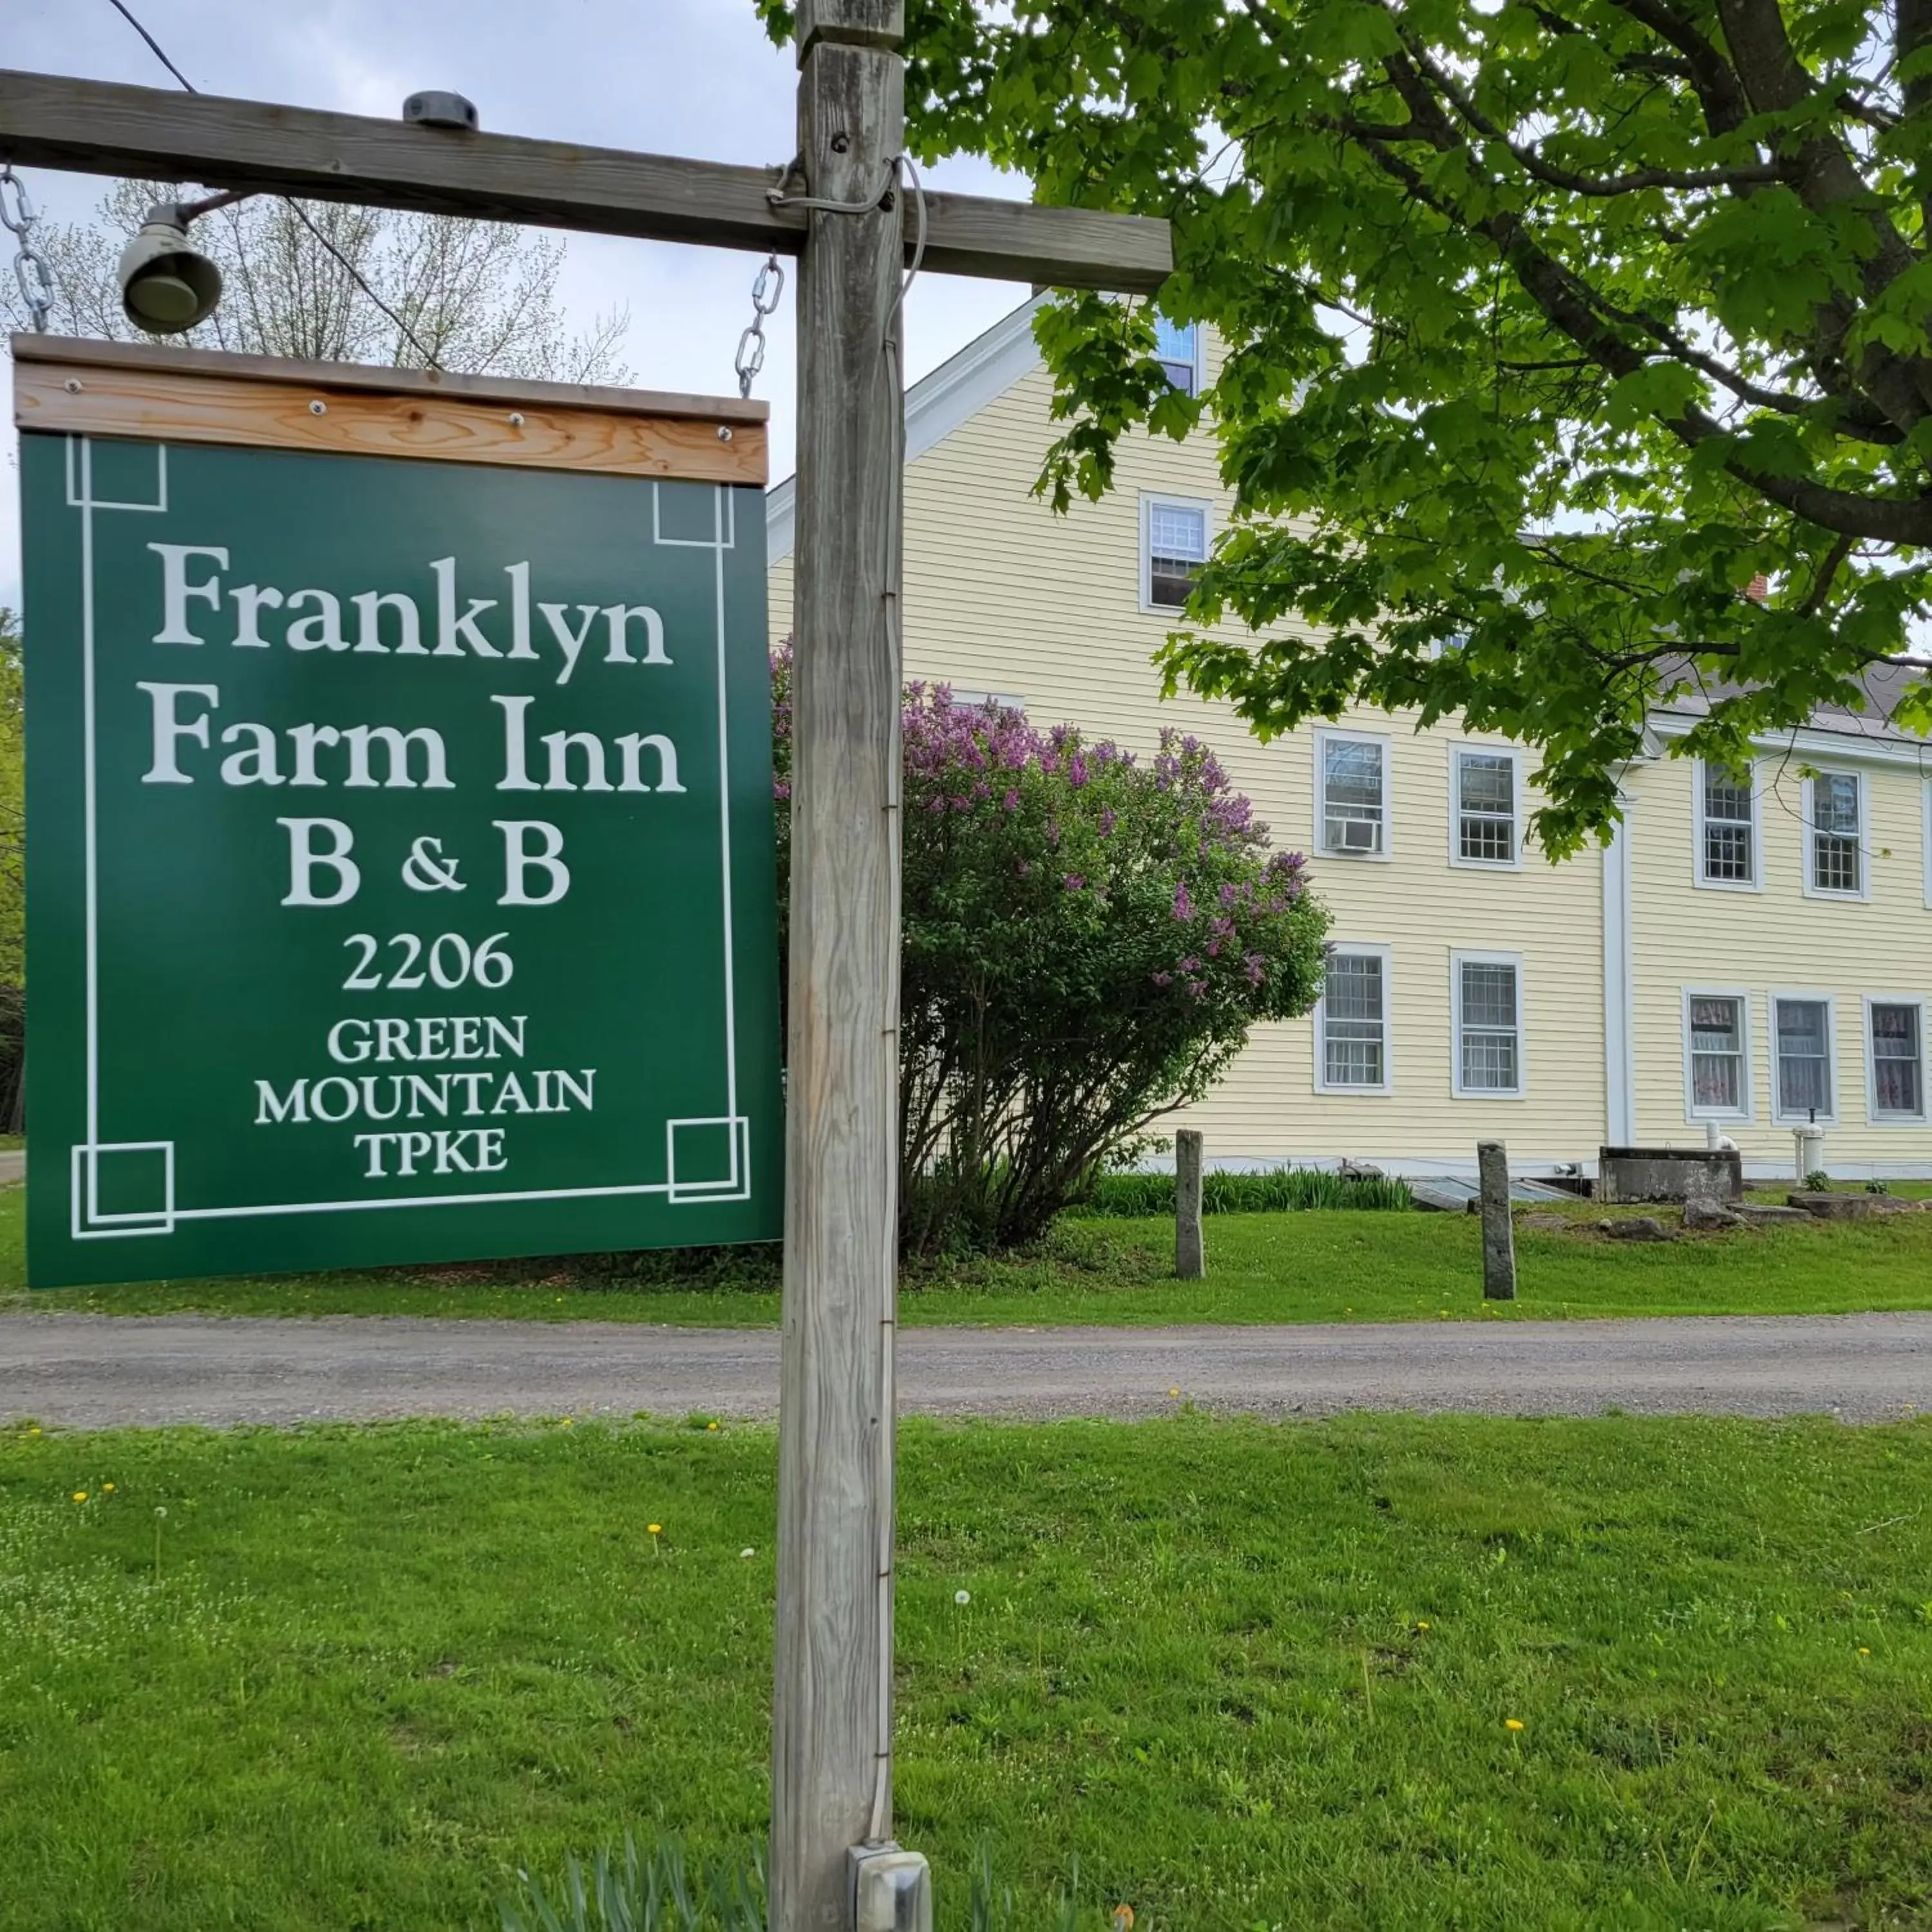 Property building in Franklyn Farm Inn